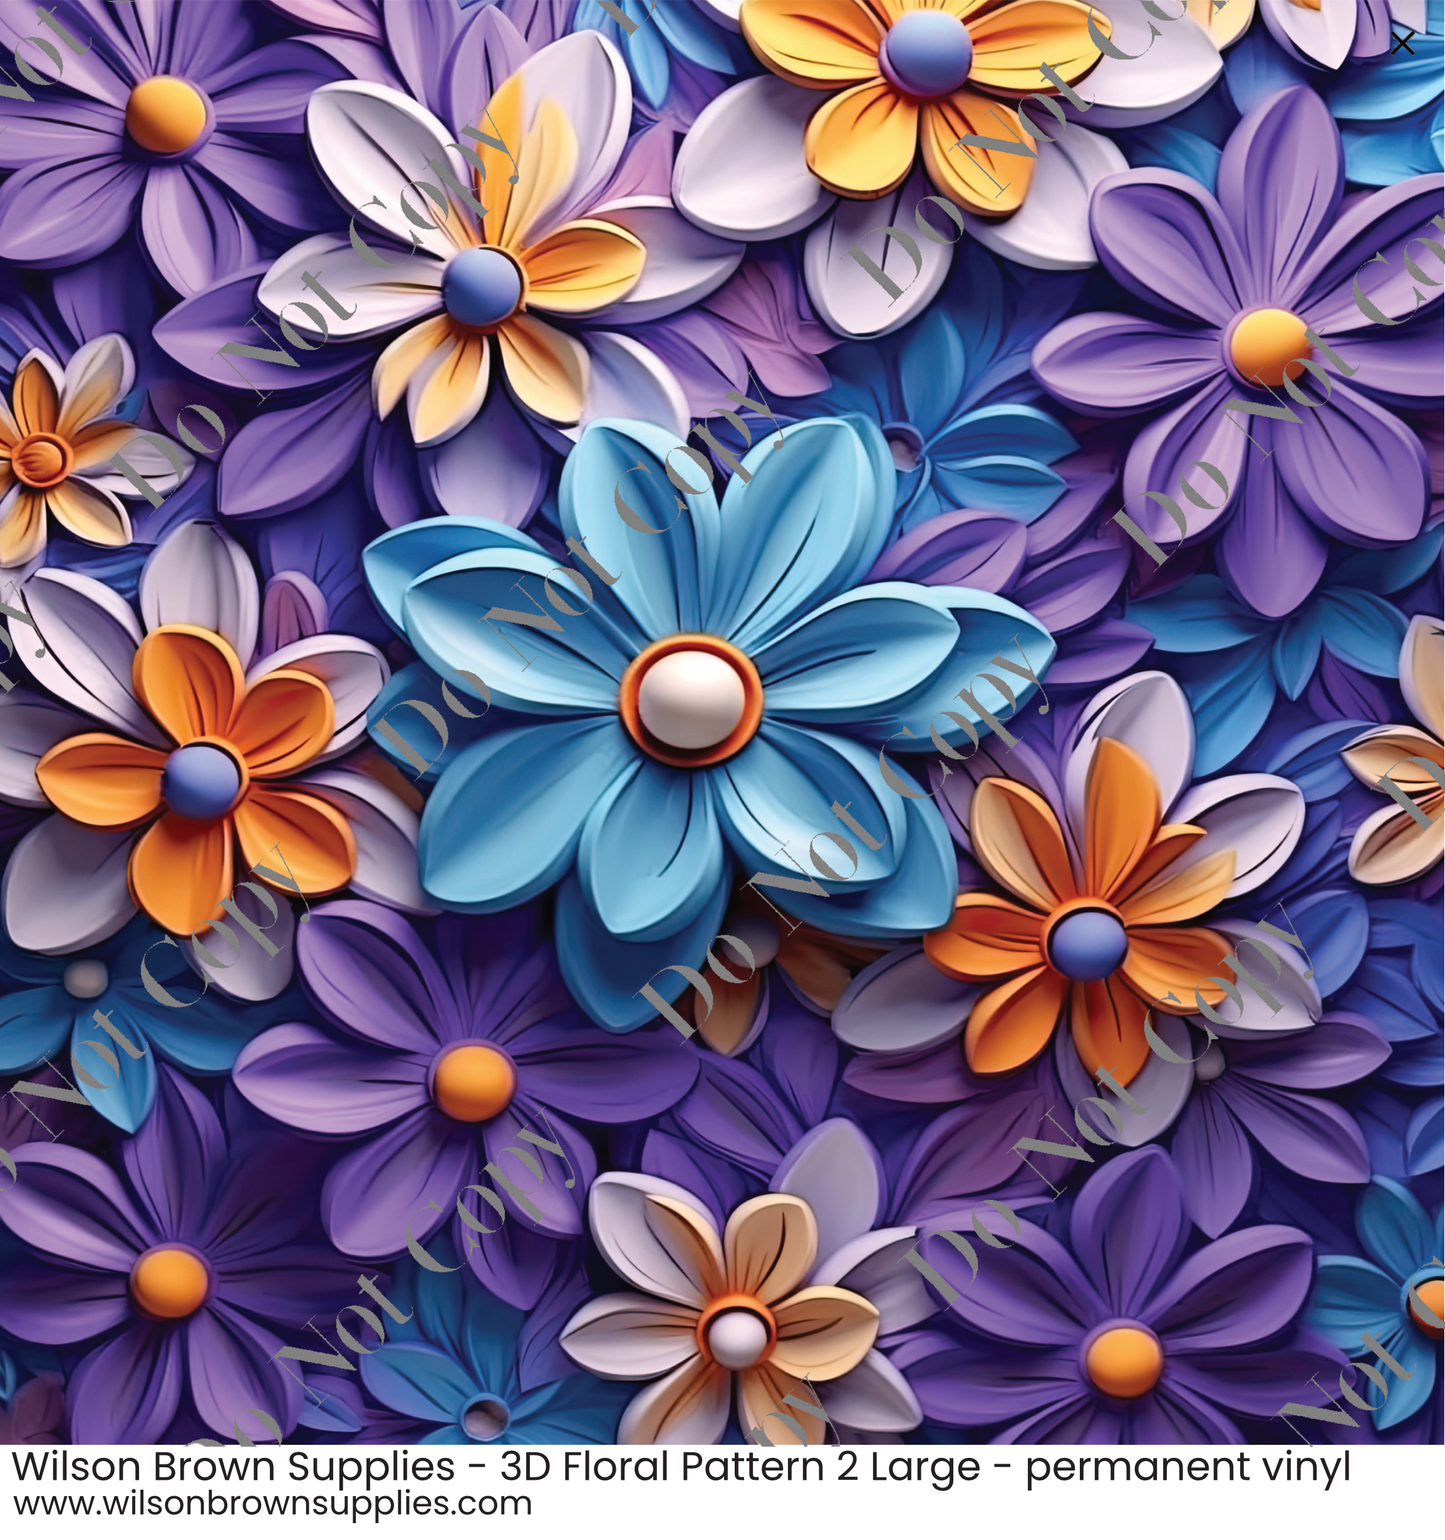 Patterned Vinyl - 3D Floral Pattern 2